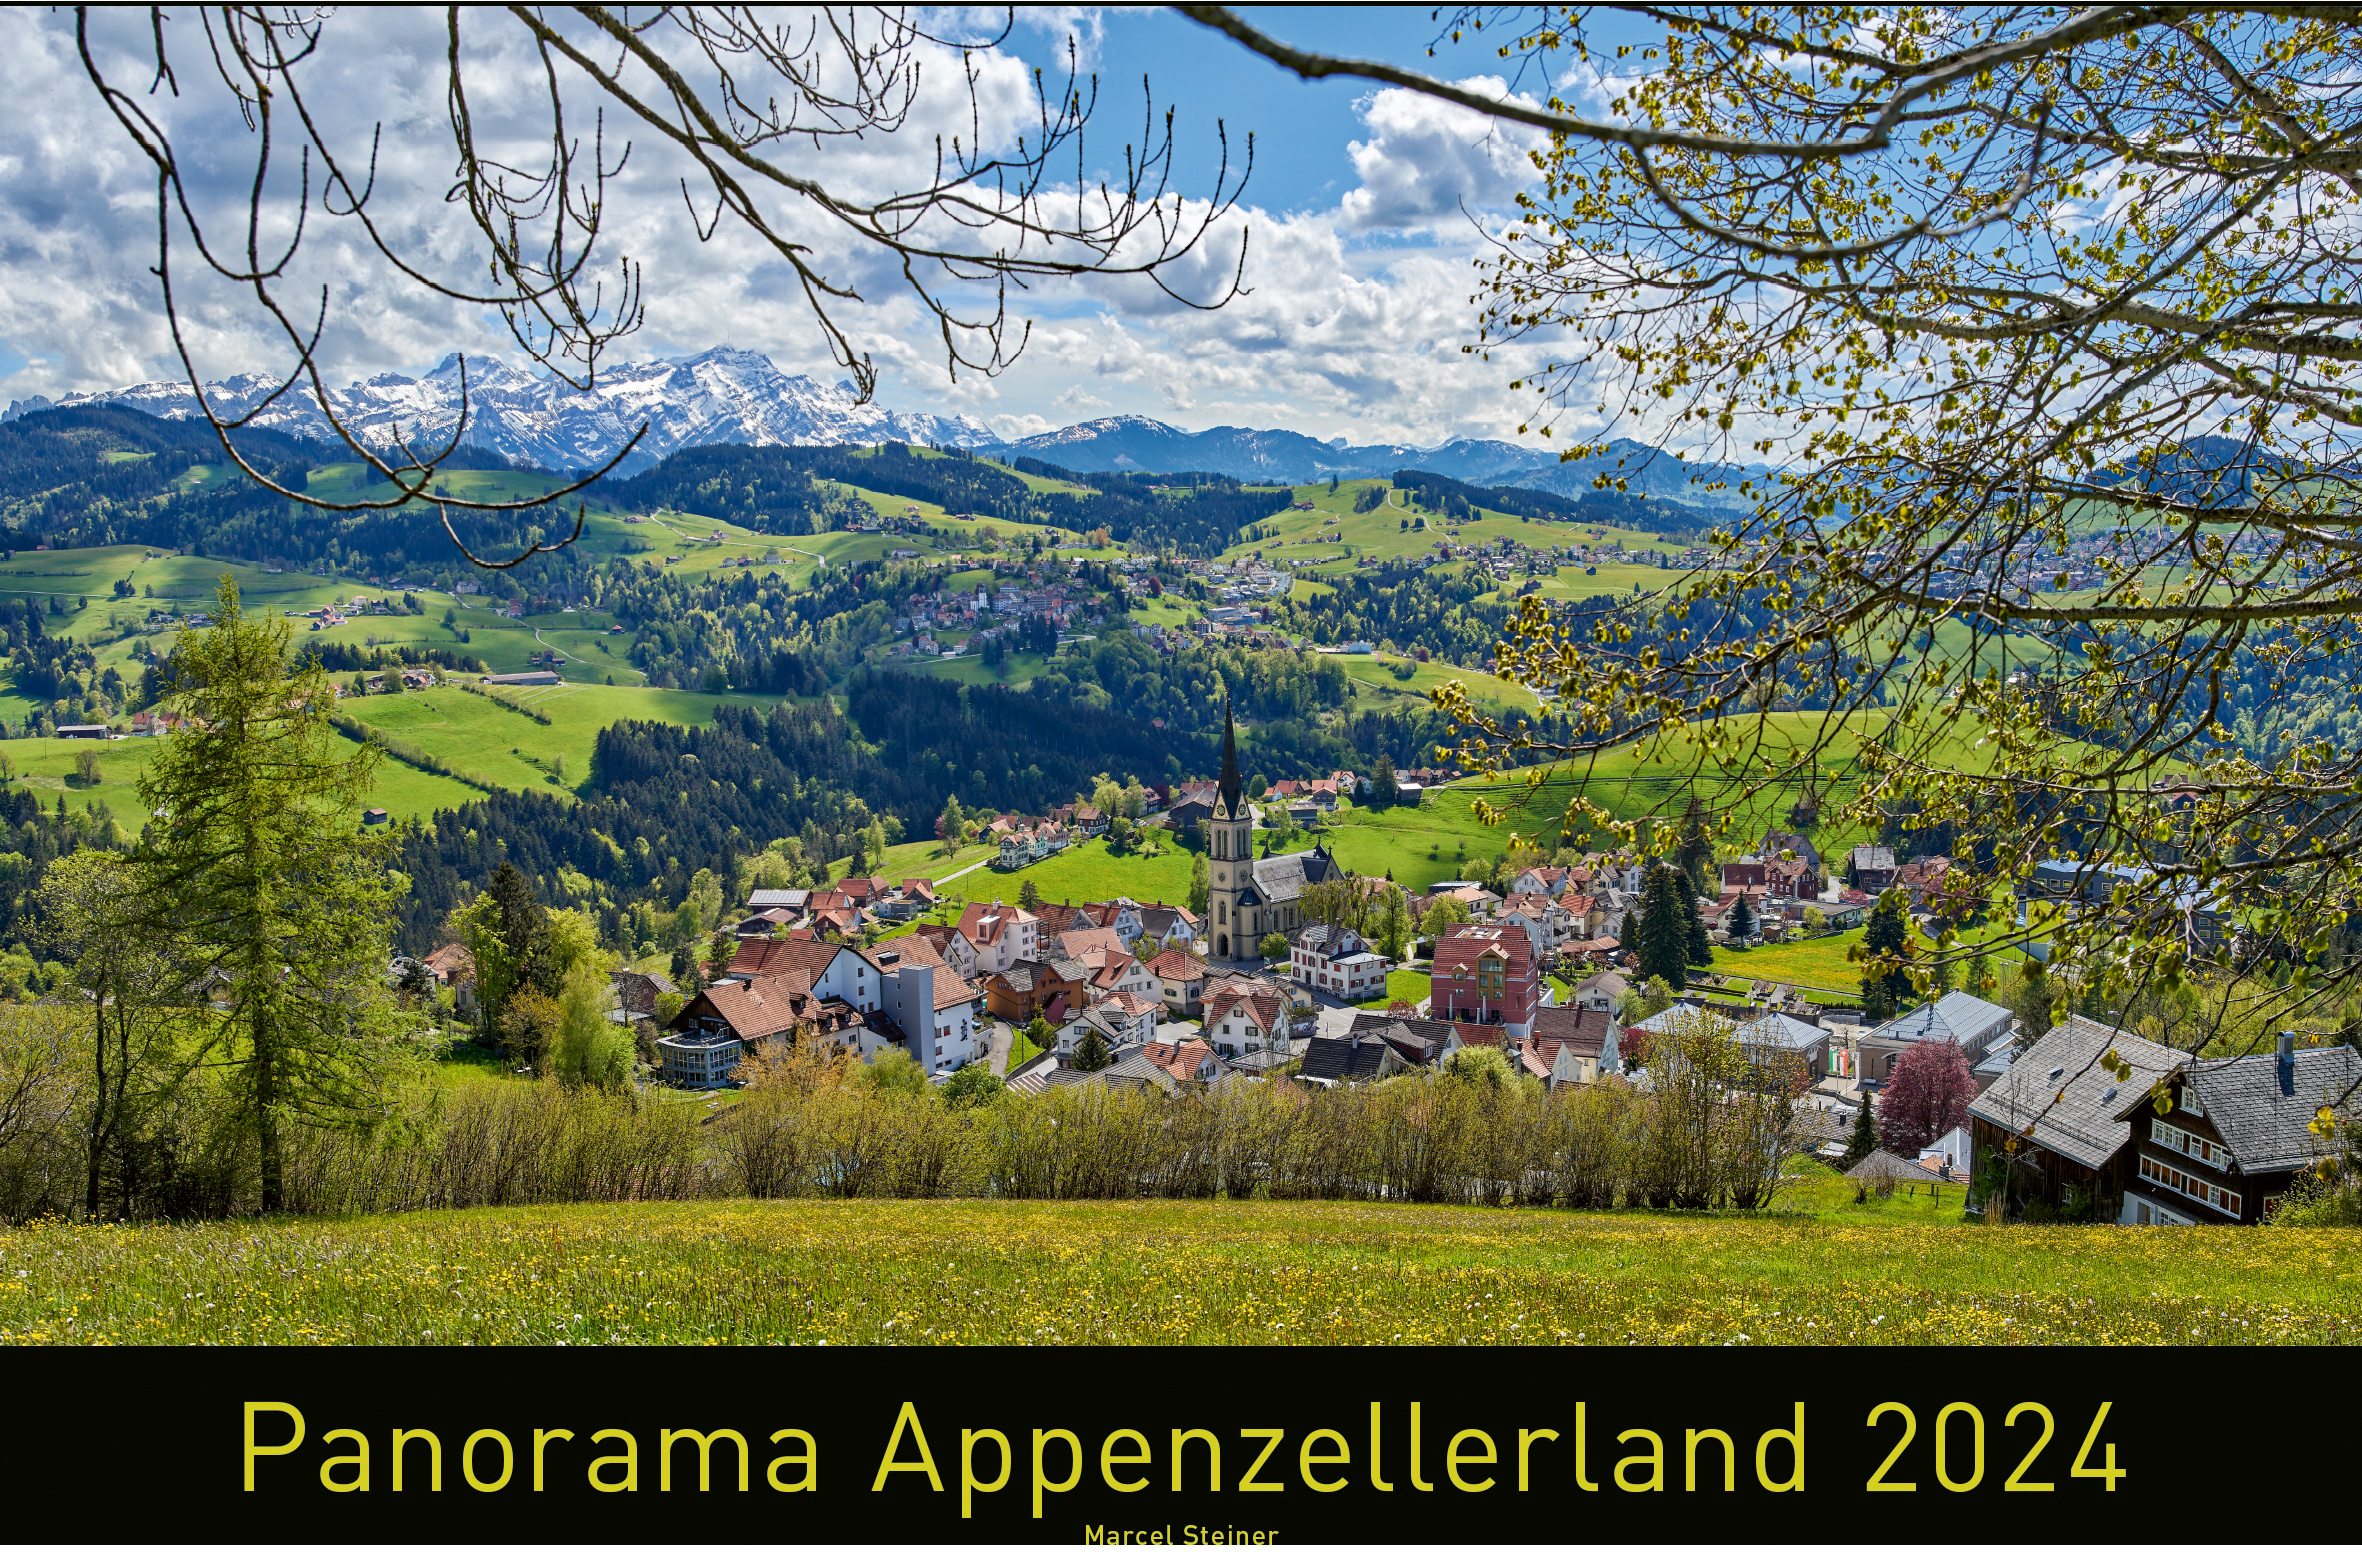 APPENZELLER Panorama Appenzellerland 2024 43317850 D 70x50cm